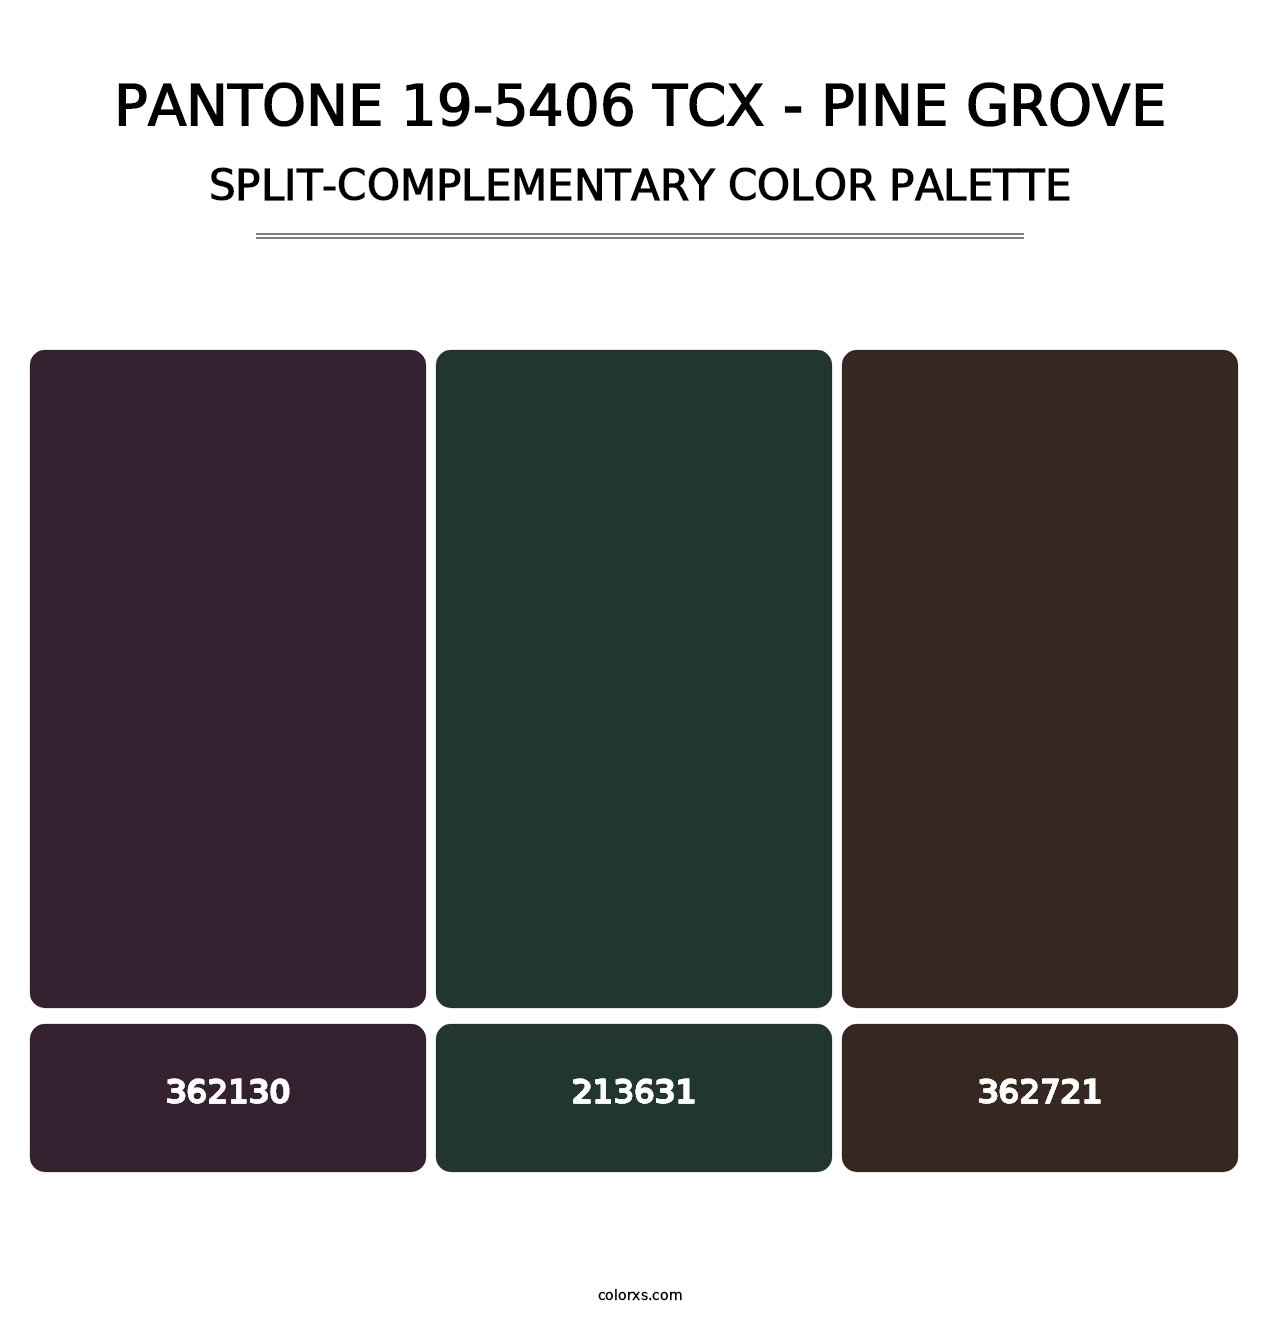 PANTONE 19-5406 TCX - Pine Grove - Split-Complementary Color Palette